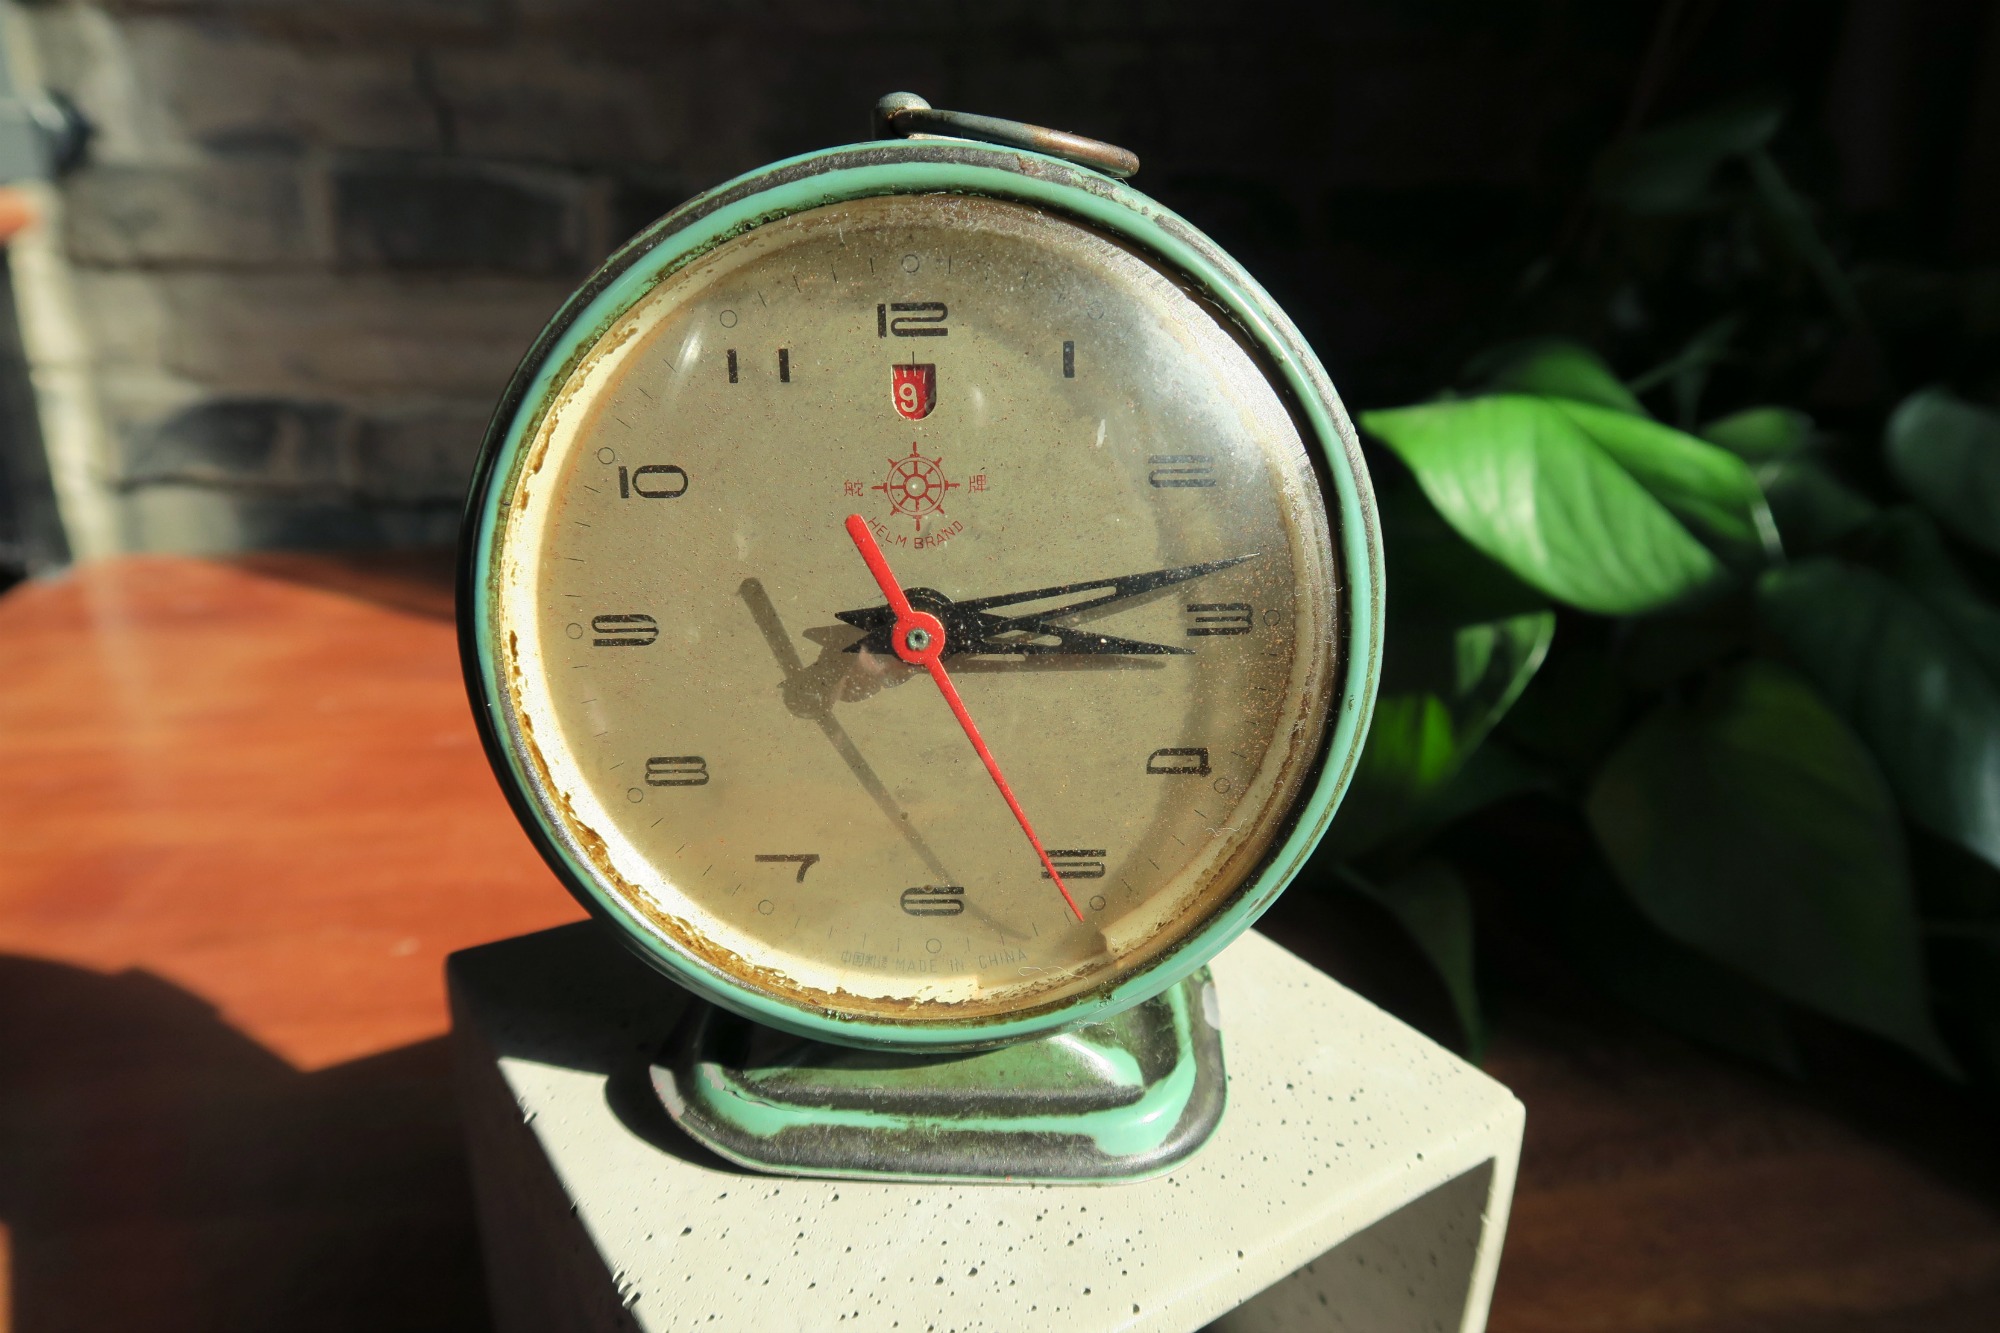 Treasure of the Week: Grandpa’s vintage 60s alarm clock